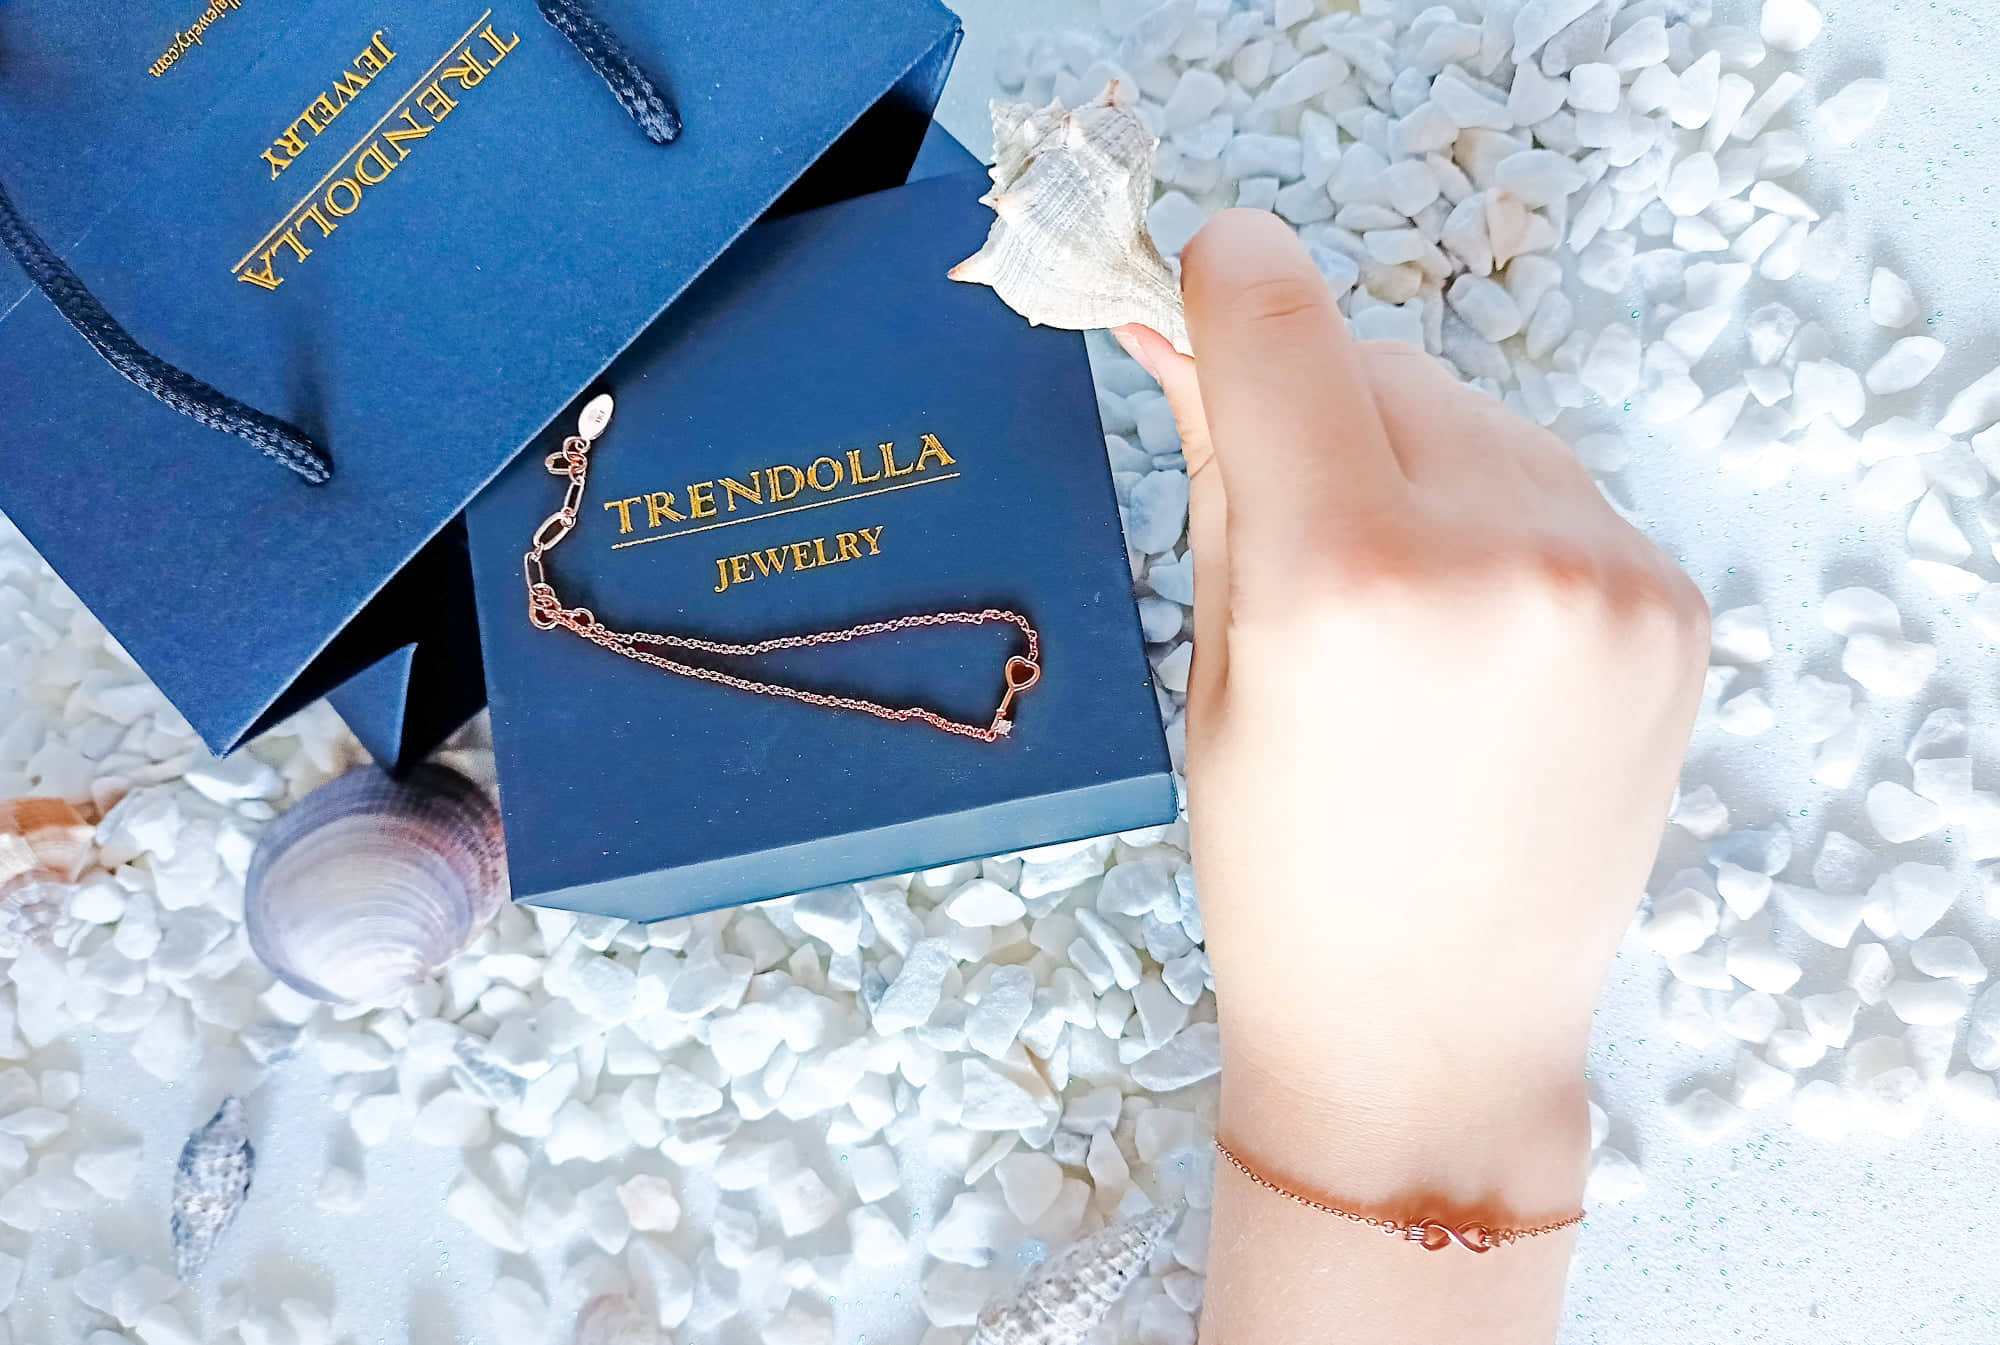 Trendolla jewelry la nostra esperienza d'acquisto